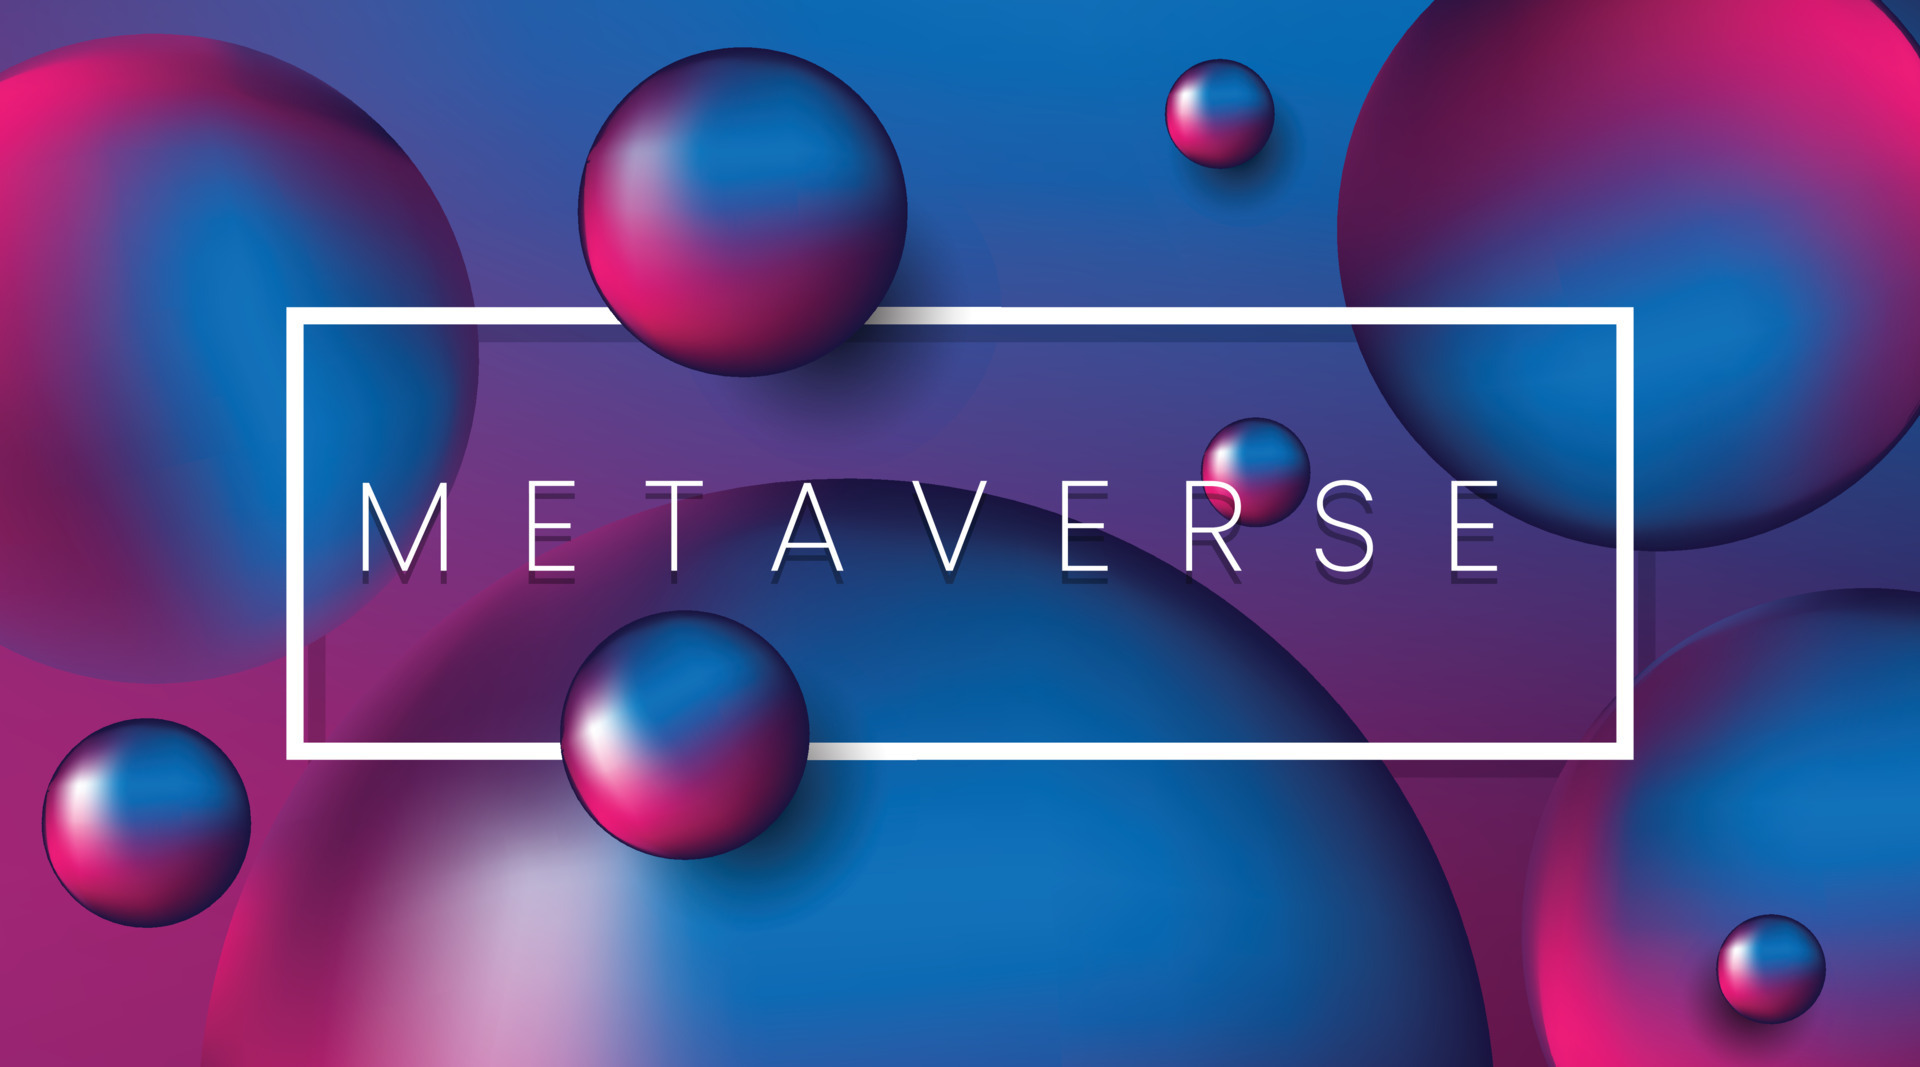 图片展示了多个浮动的彩色球体，背景为蓝紫渐变色，中间有一个框内写着“METAVERSE”字样。